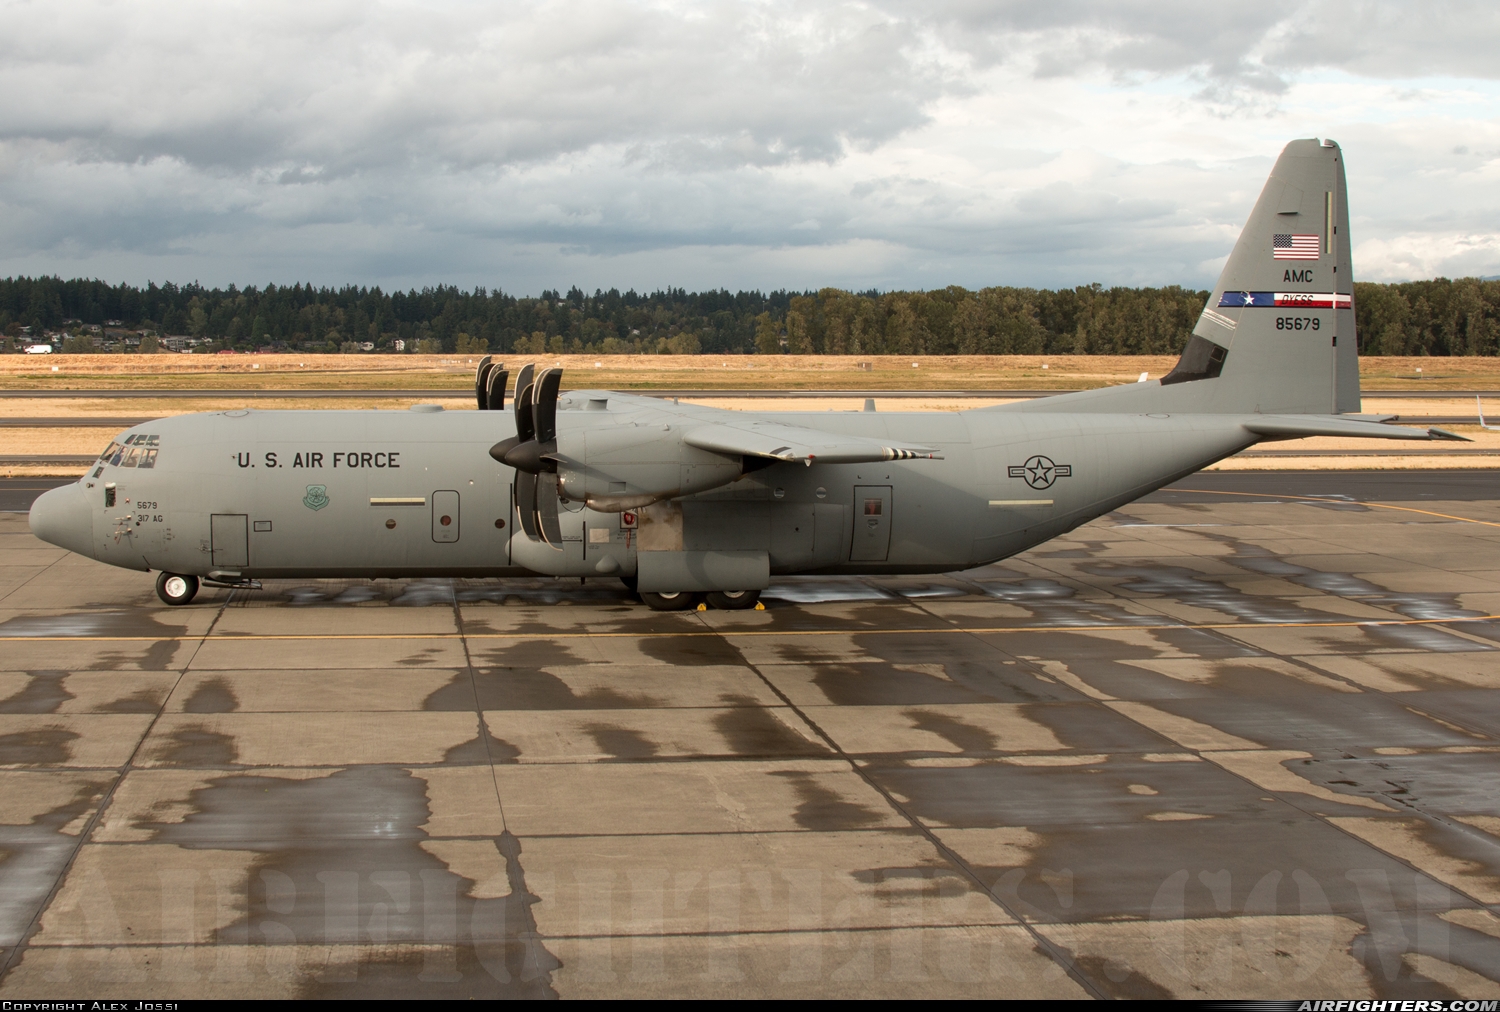 USA - Air Force Lockheed Martin C-130J-30 Hercules (L-382) 08-5679 at Portland - Int. (PDX / KPDX), USA